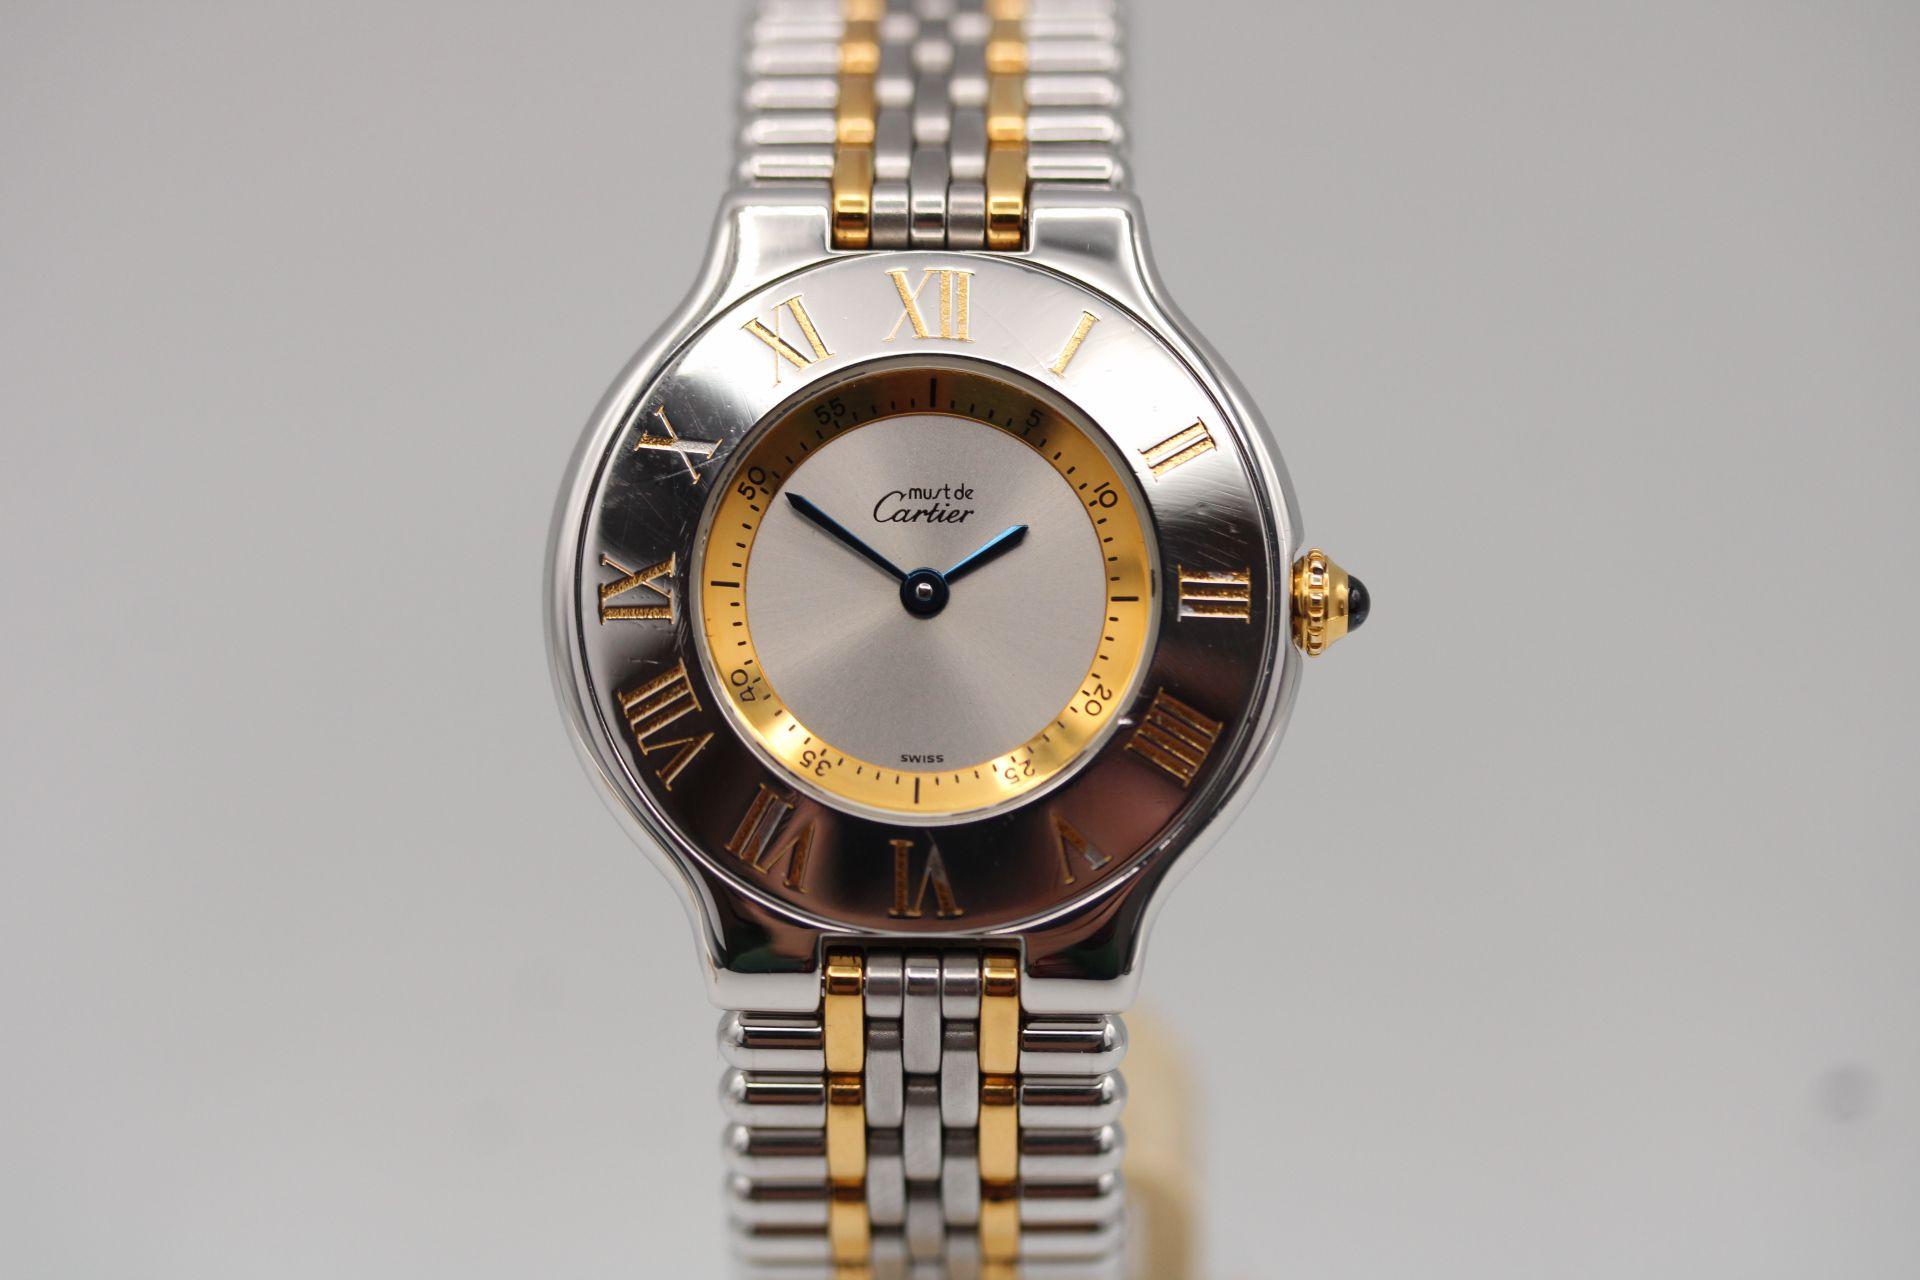 Reloj Cartier Must De 21
Número de inventario: CHW5409
Precio: 995,00

¡Un reloj enorme por menos de 1.000¤! Es un Cartier clásico que no te costará un ojo de la cara.

Caja de acero inoxidable de 31 mm con esfera plateada, marcadores de 5 minutos